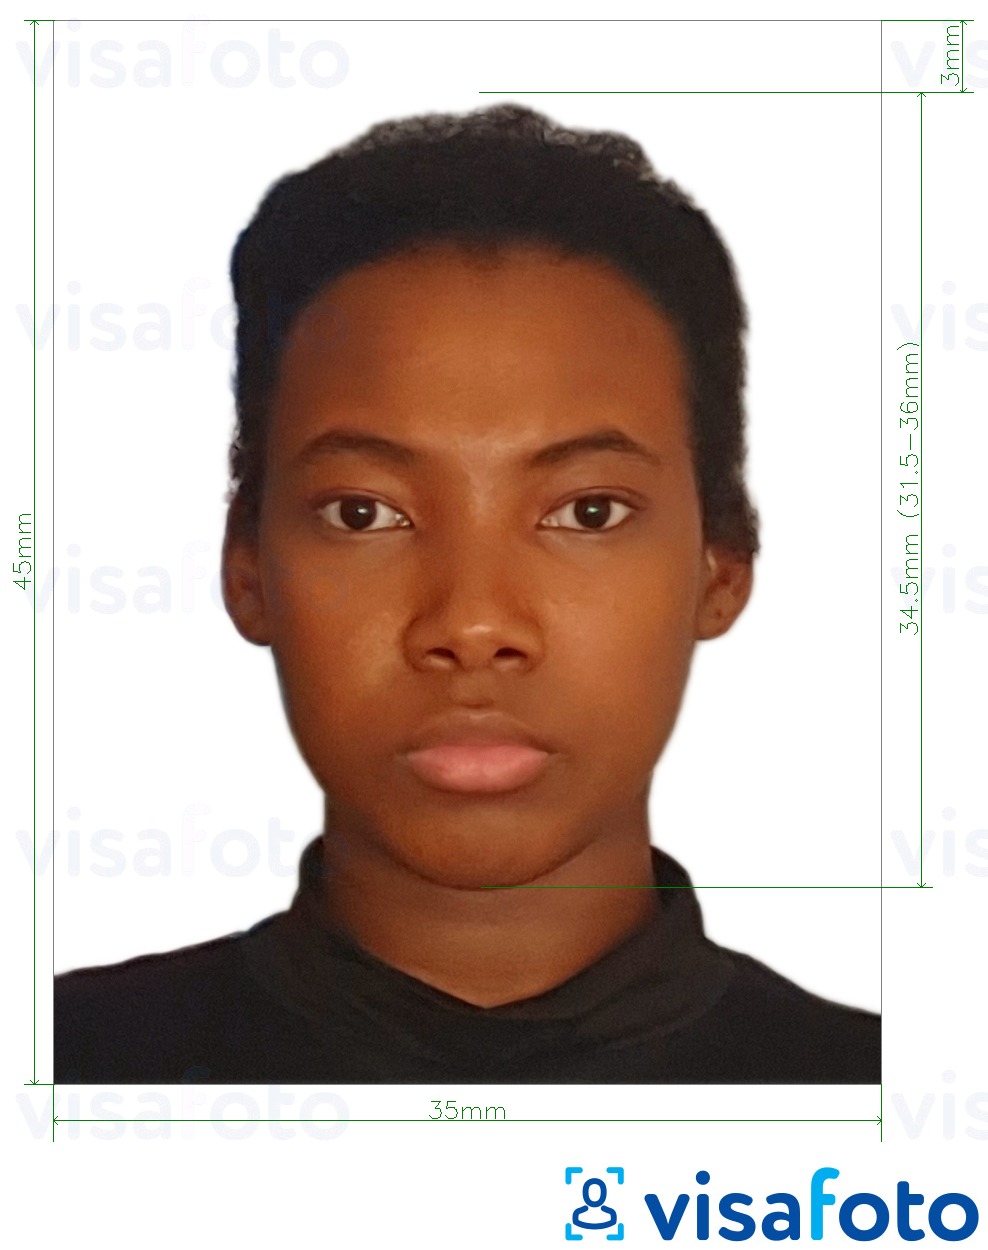 Ghana passport photo